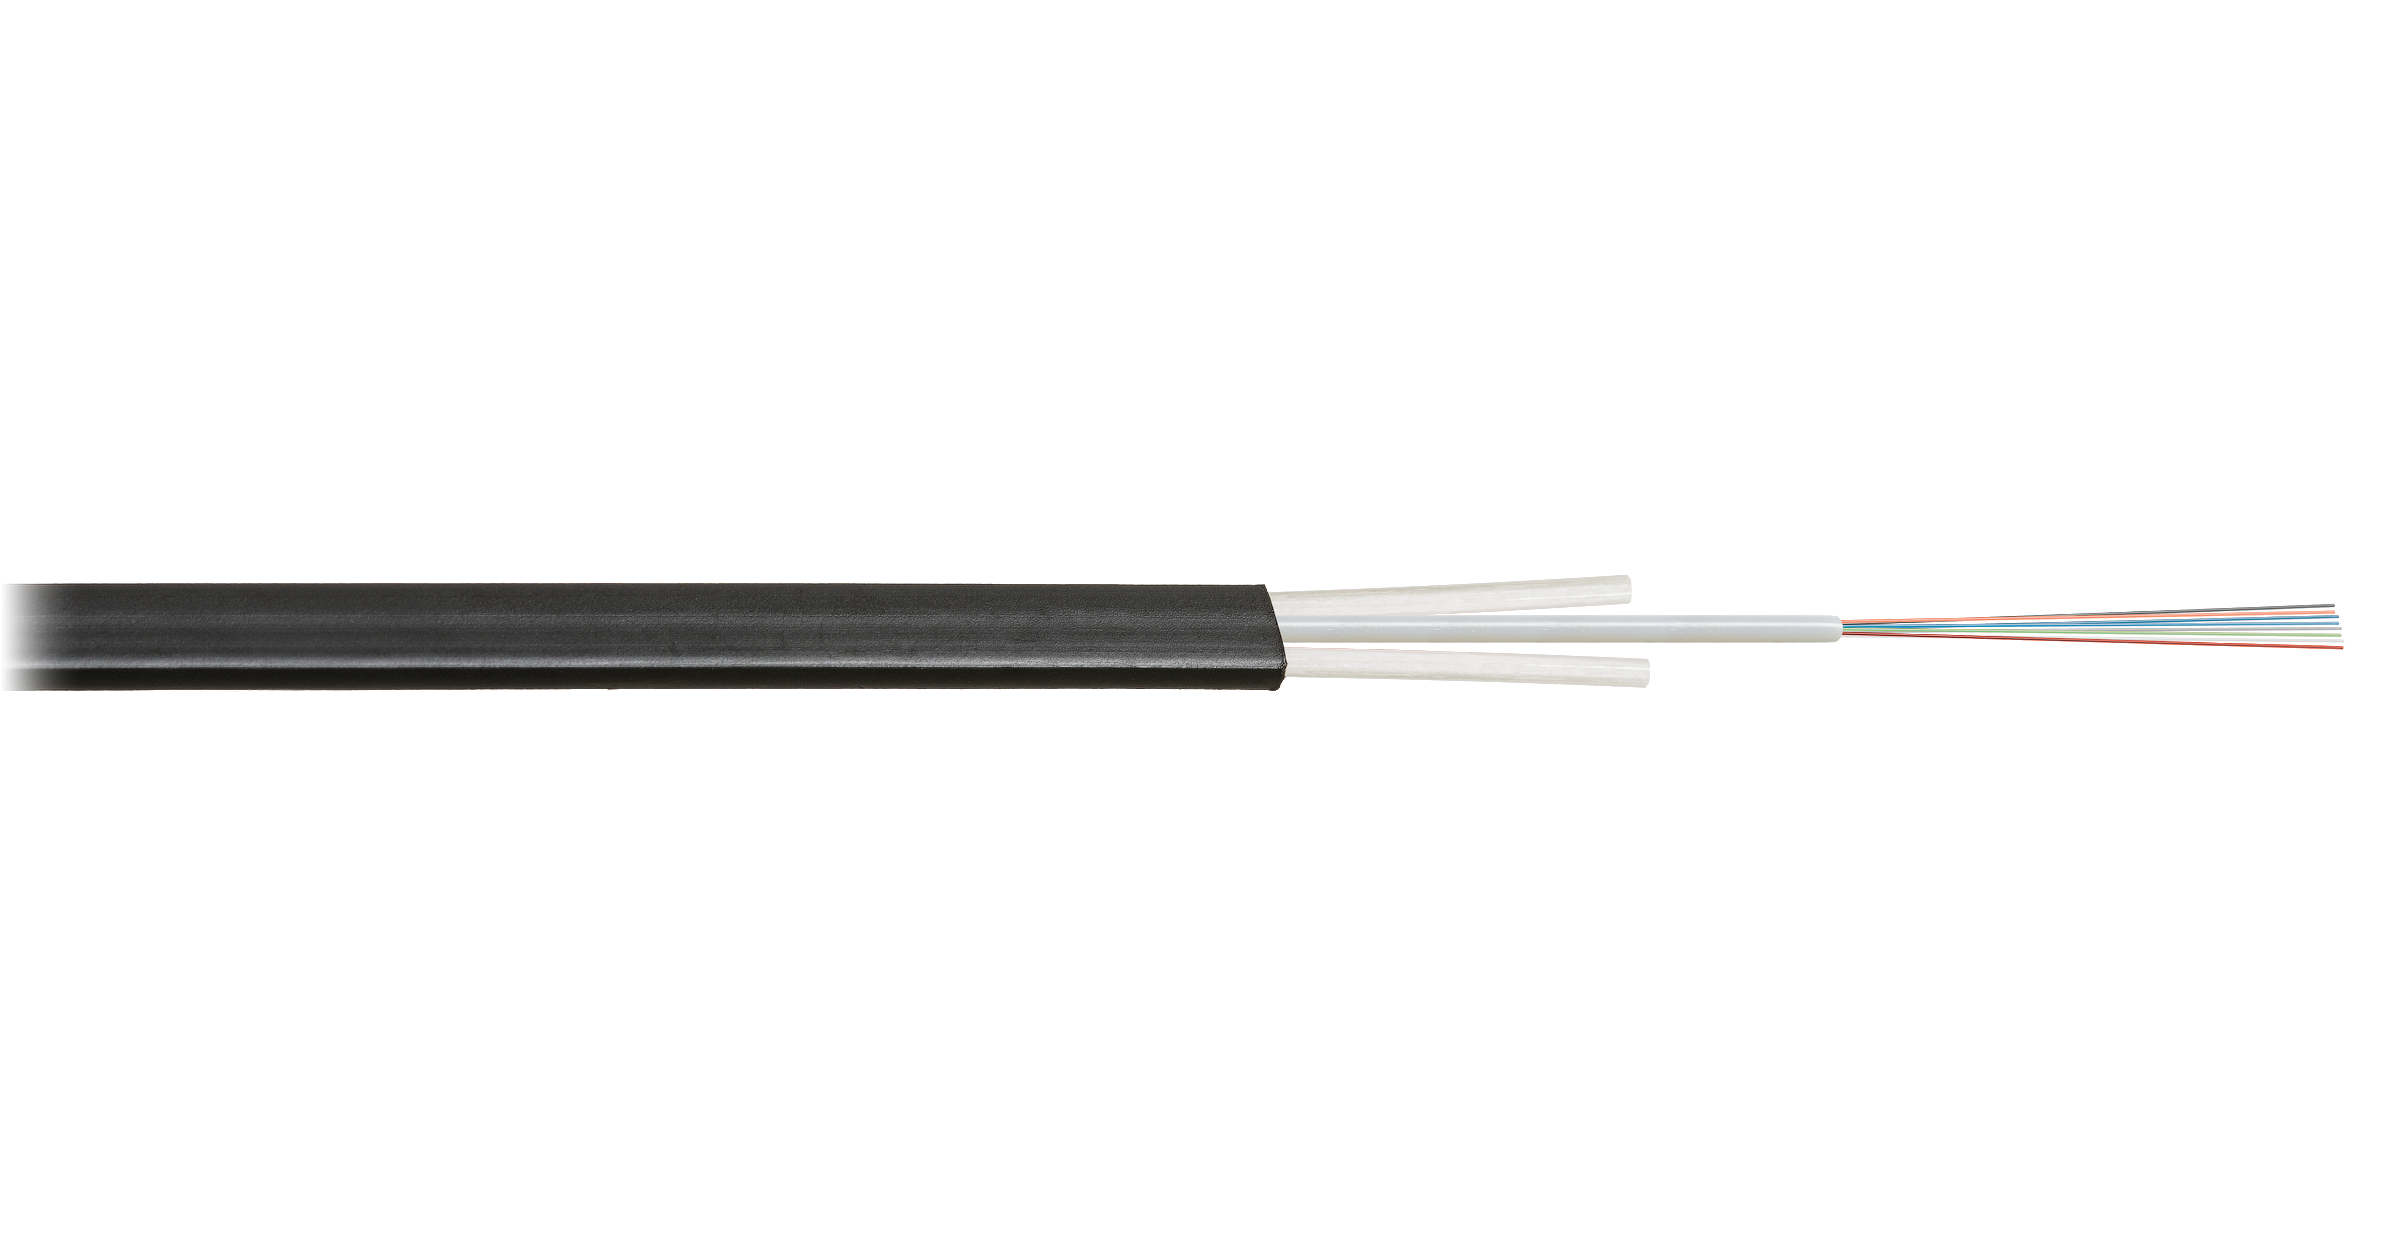 Кабель оптический NIKOLAN одномодовый, 9/125мкм, G.652.D & G.657.A1, 8 волокон, 1км, черный, для отгрузки требуется барабан, приобретается отдельно (NKL-F-008A1D-01B-BK)